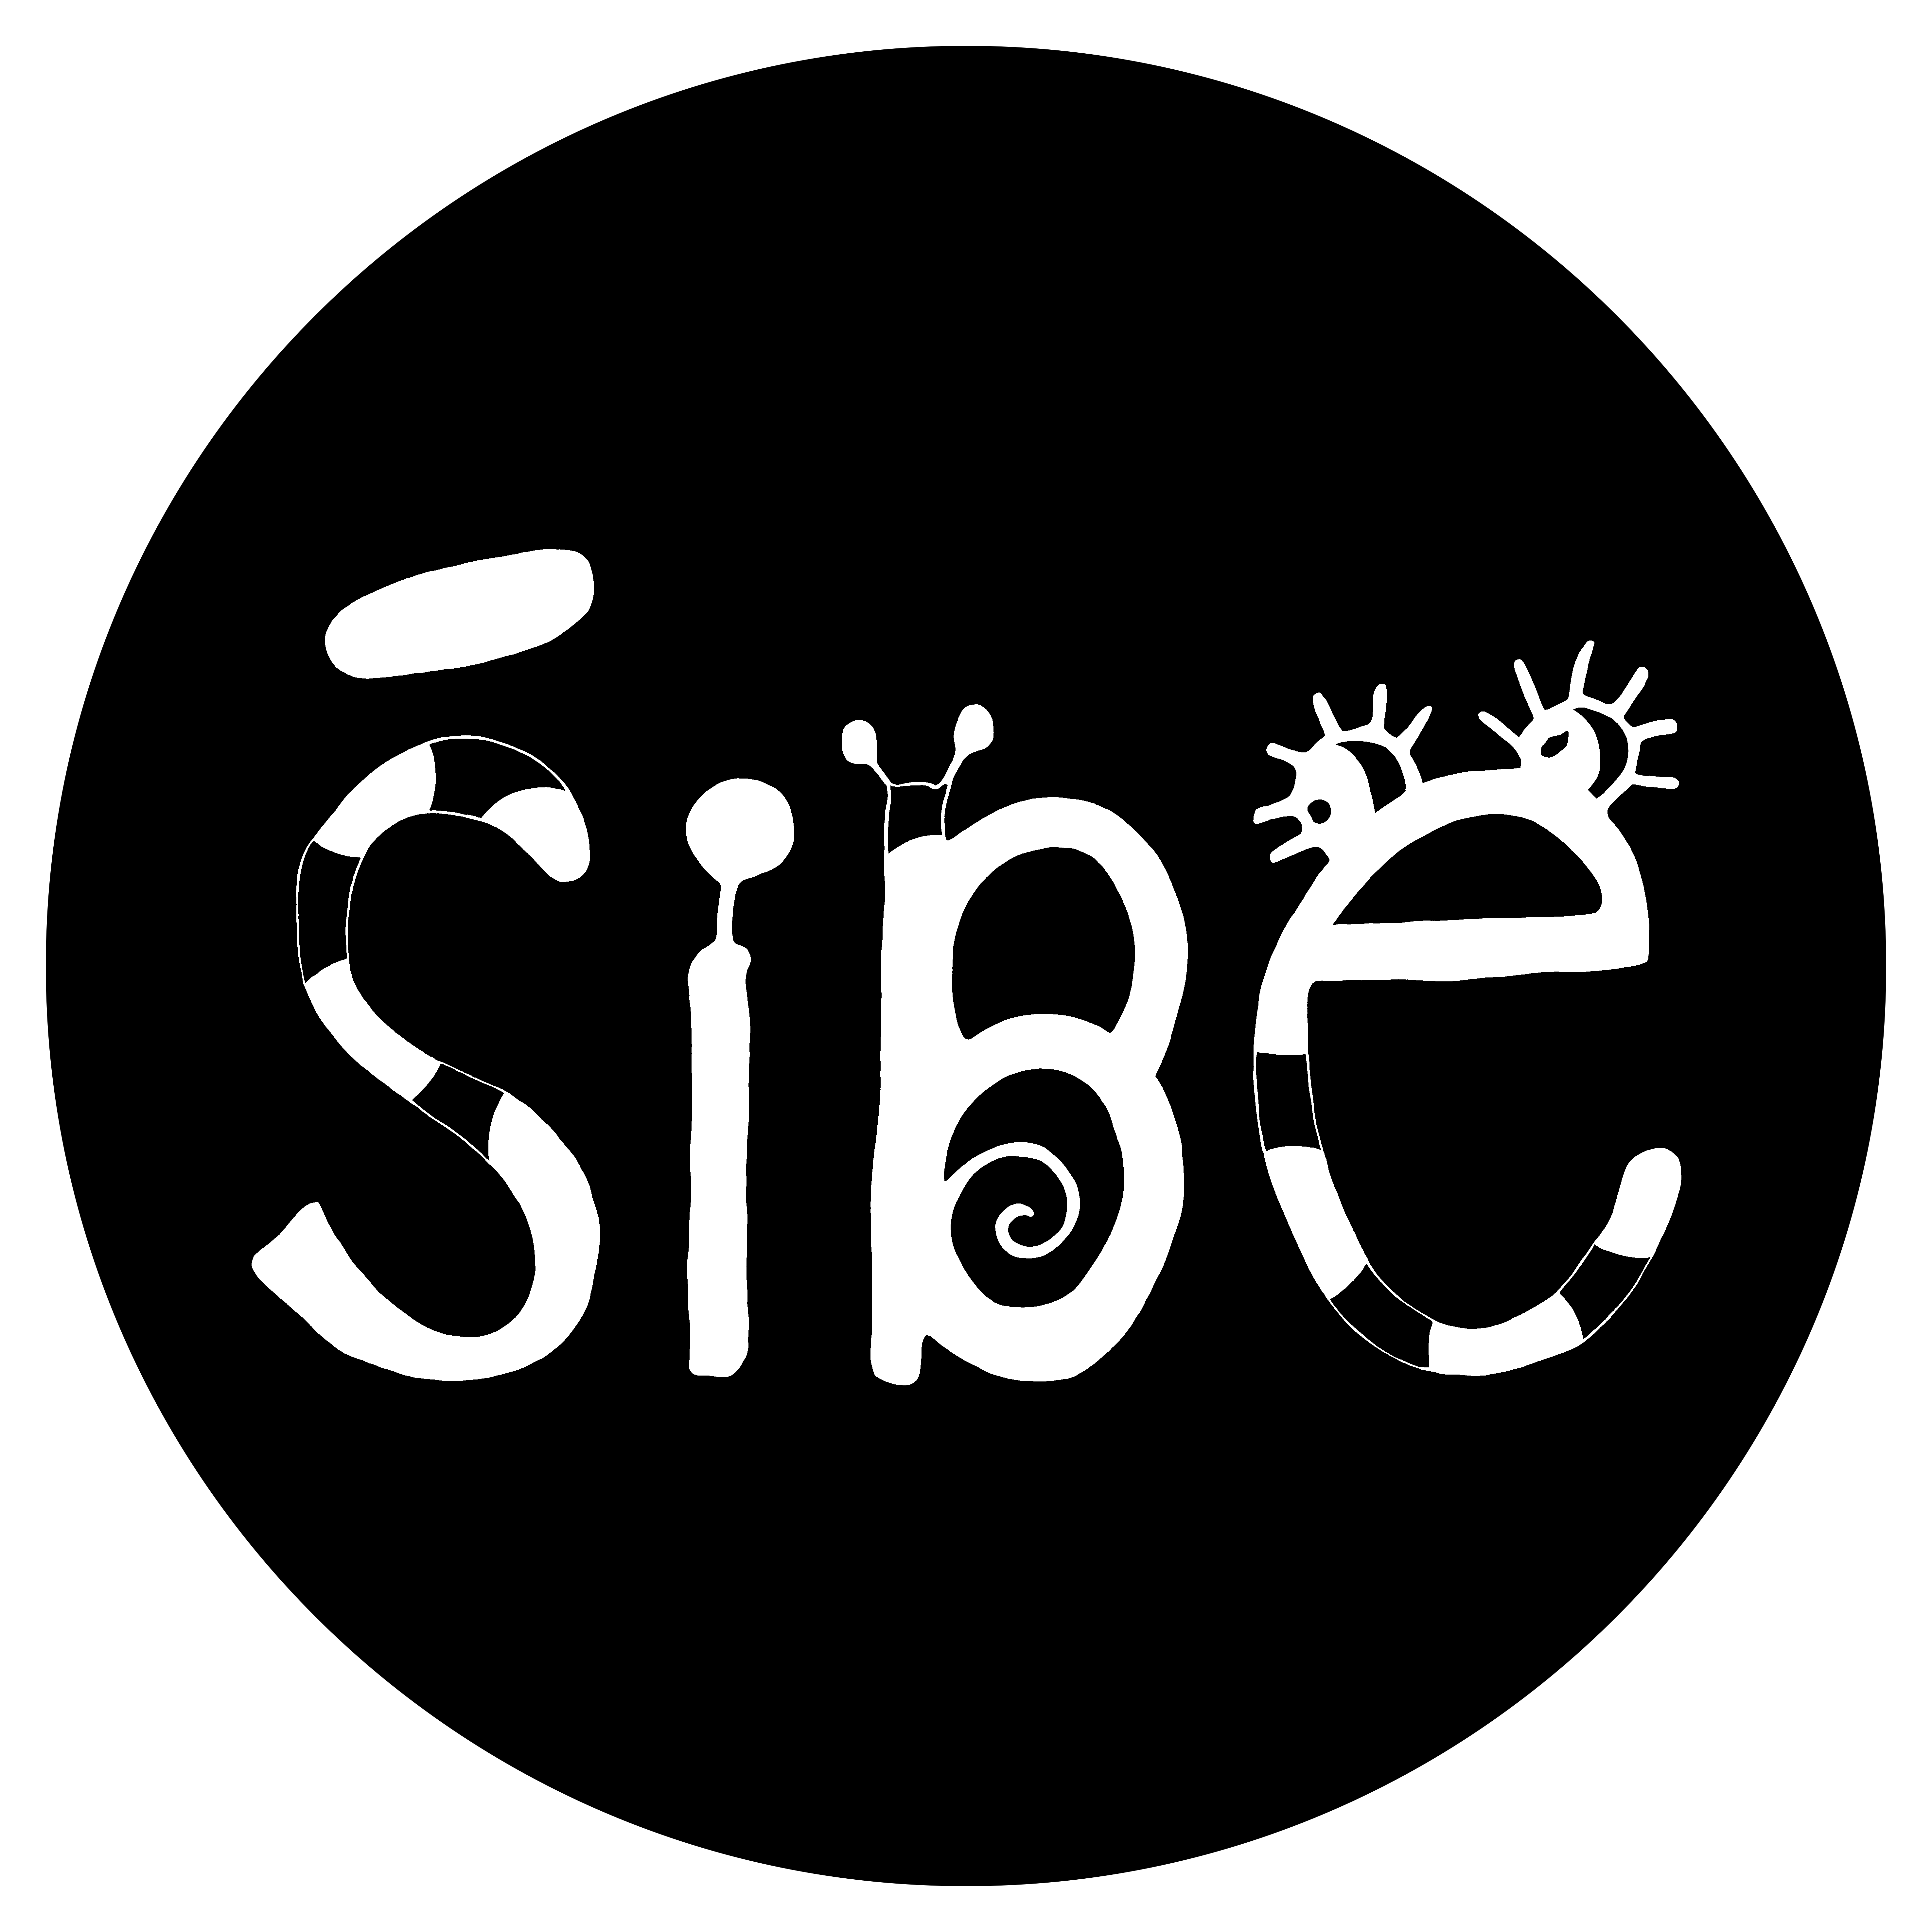 www.sibe.sk